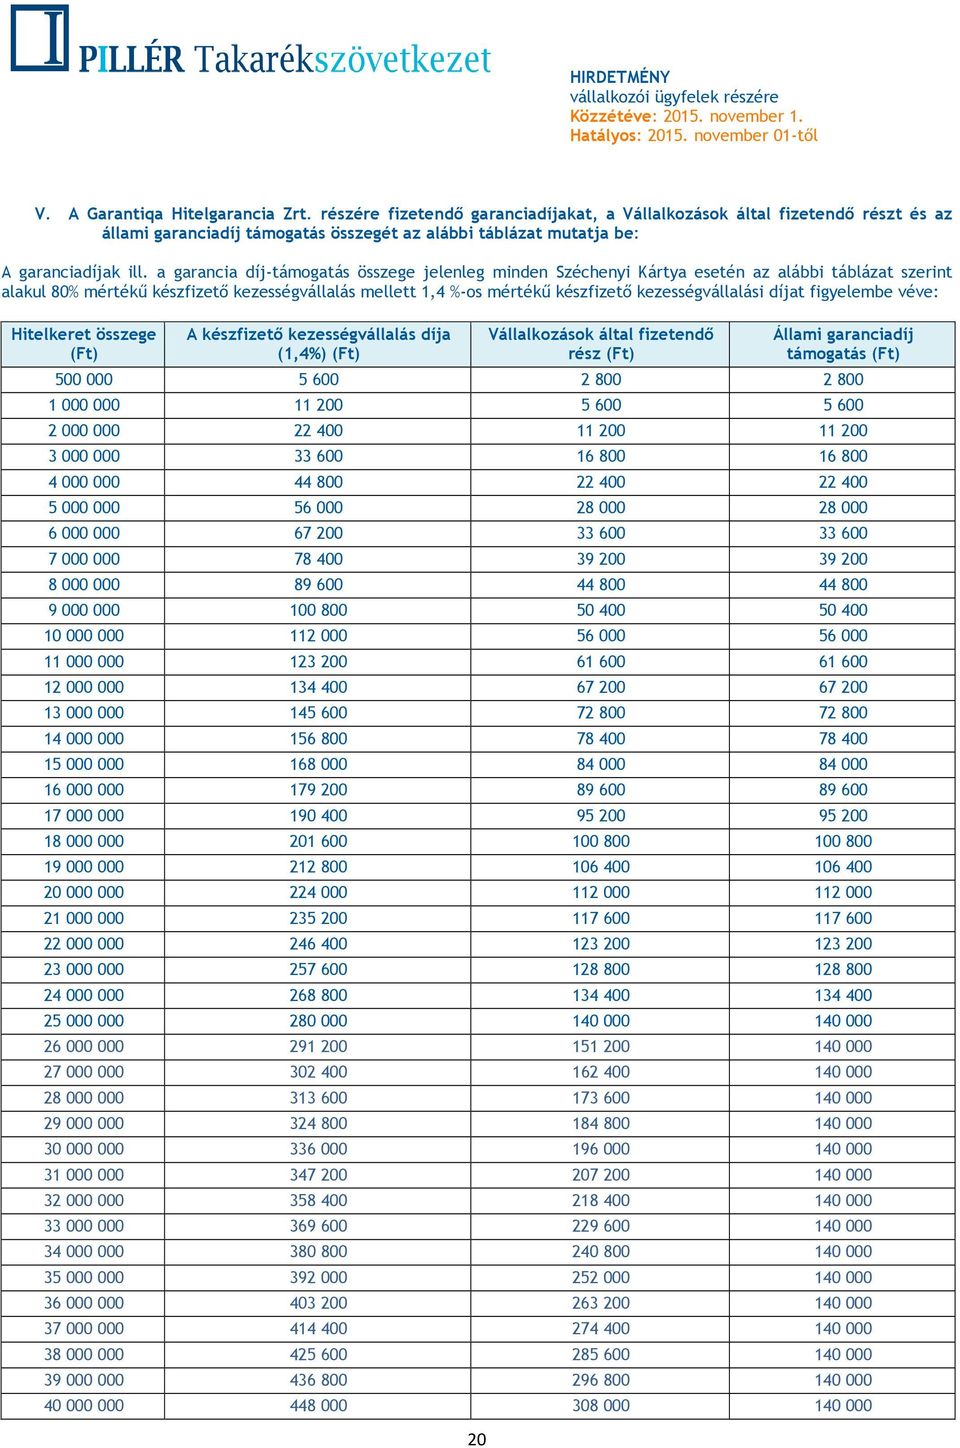 a garancia díj-támogatás összege jelenleg minden Széchenyi Kártya esetén az alábbi táblázat szerint alakul 80% mértékű készfizető kezességvállalás mellett 1,4 %-os mértékű készfizető